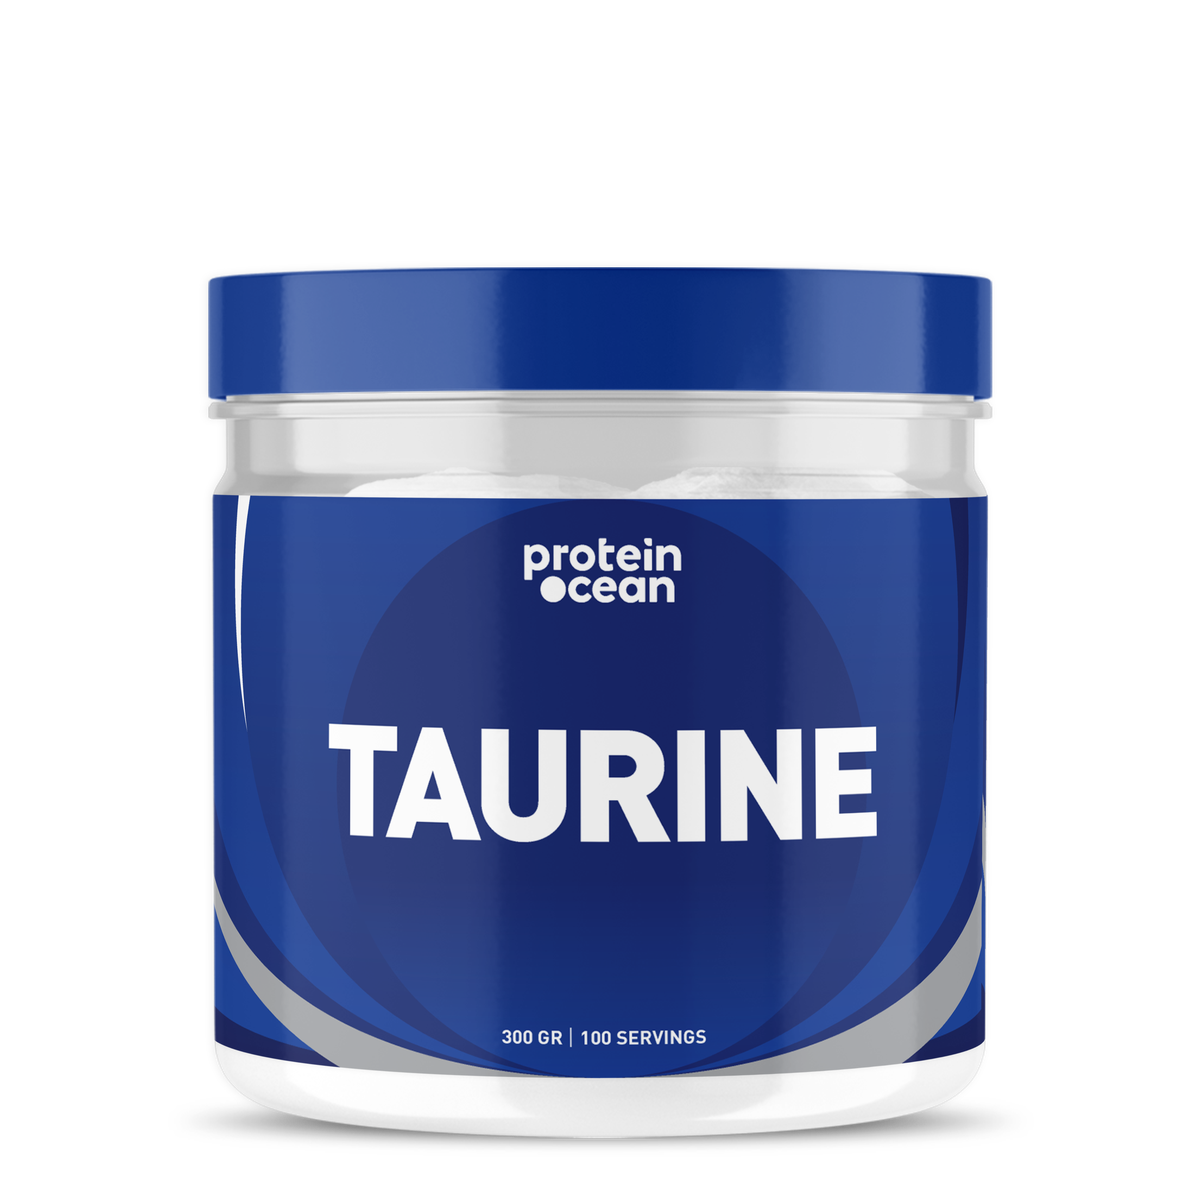 Protein Ocean Taurine 300g